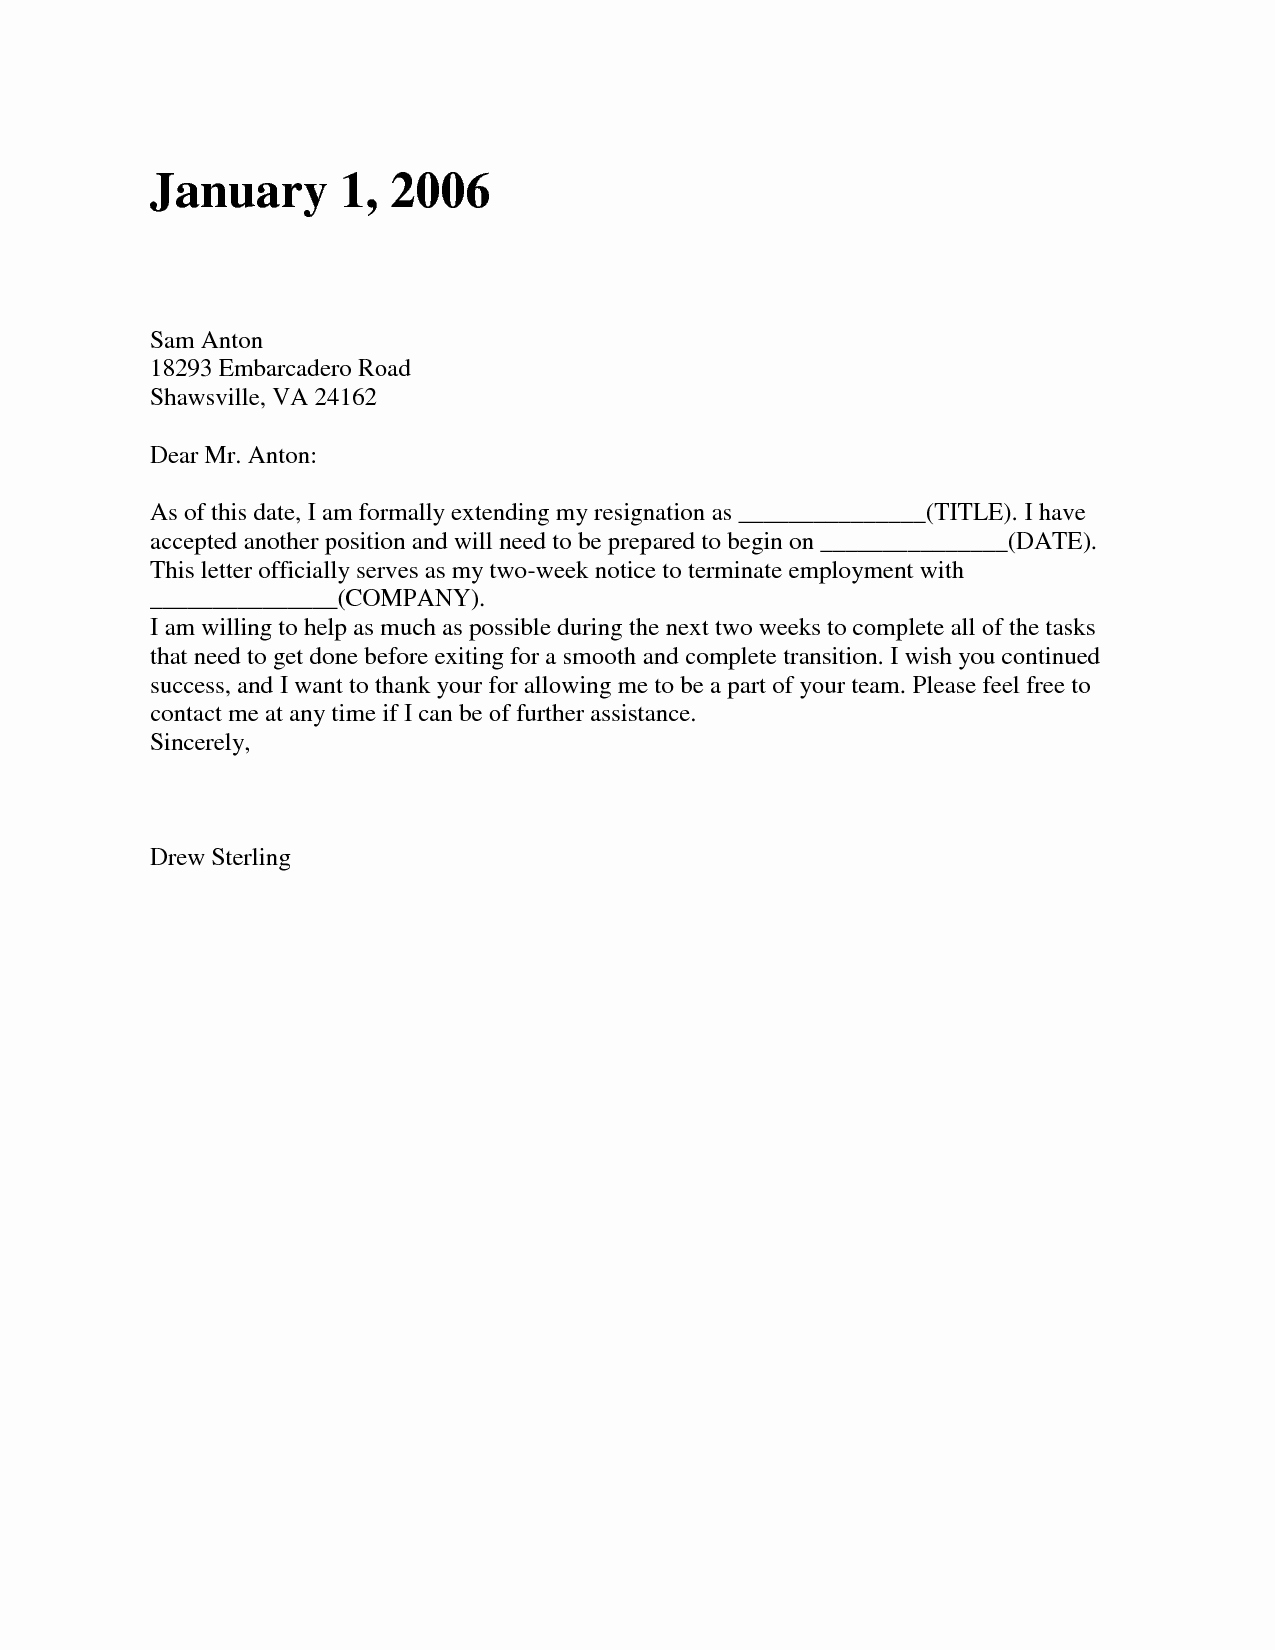 Resignation Letter Sample Lovely Two Weeks’ Notice Resignation Letter Samples